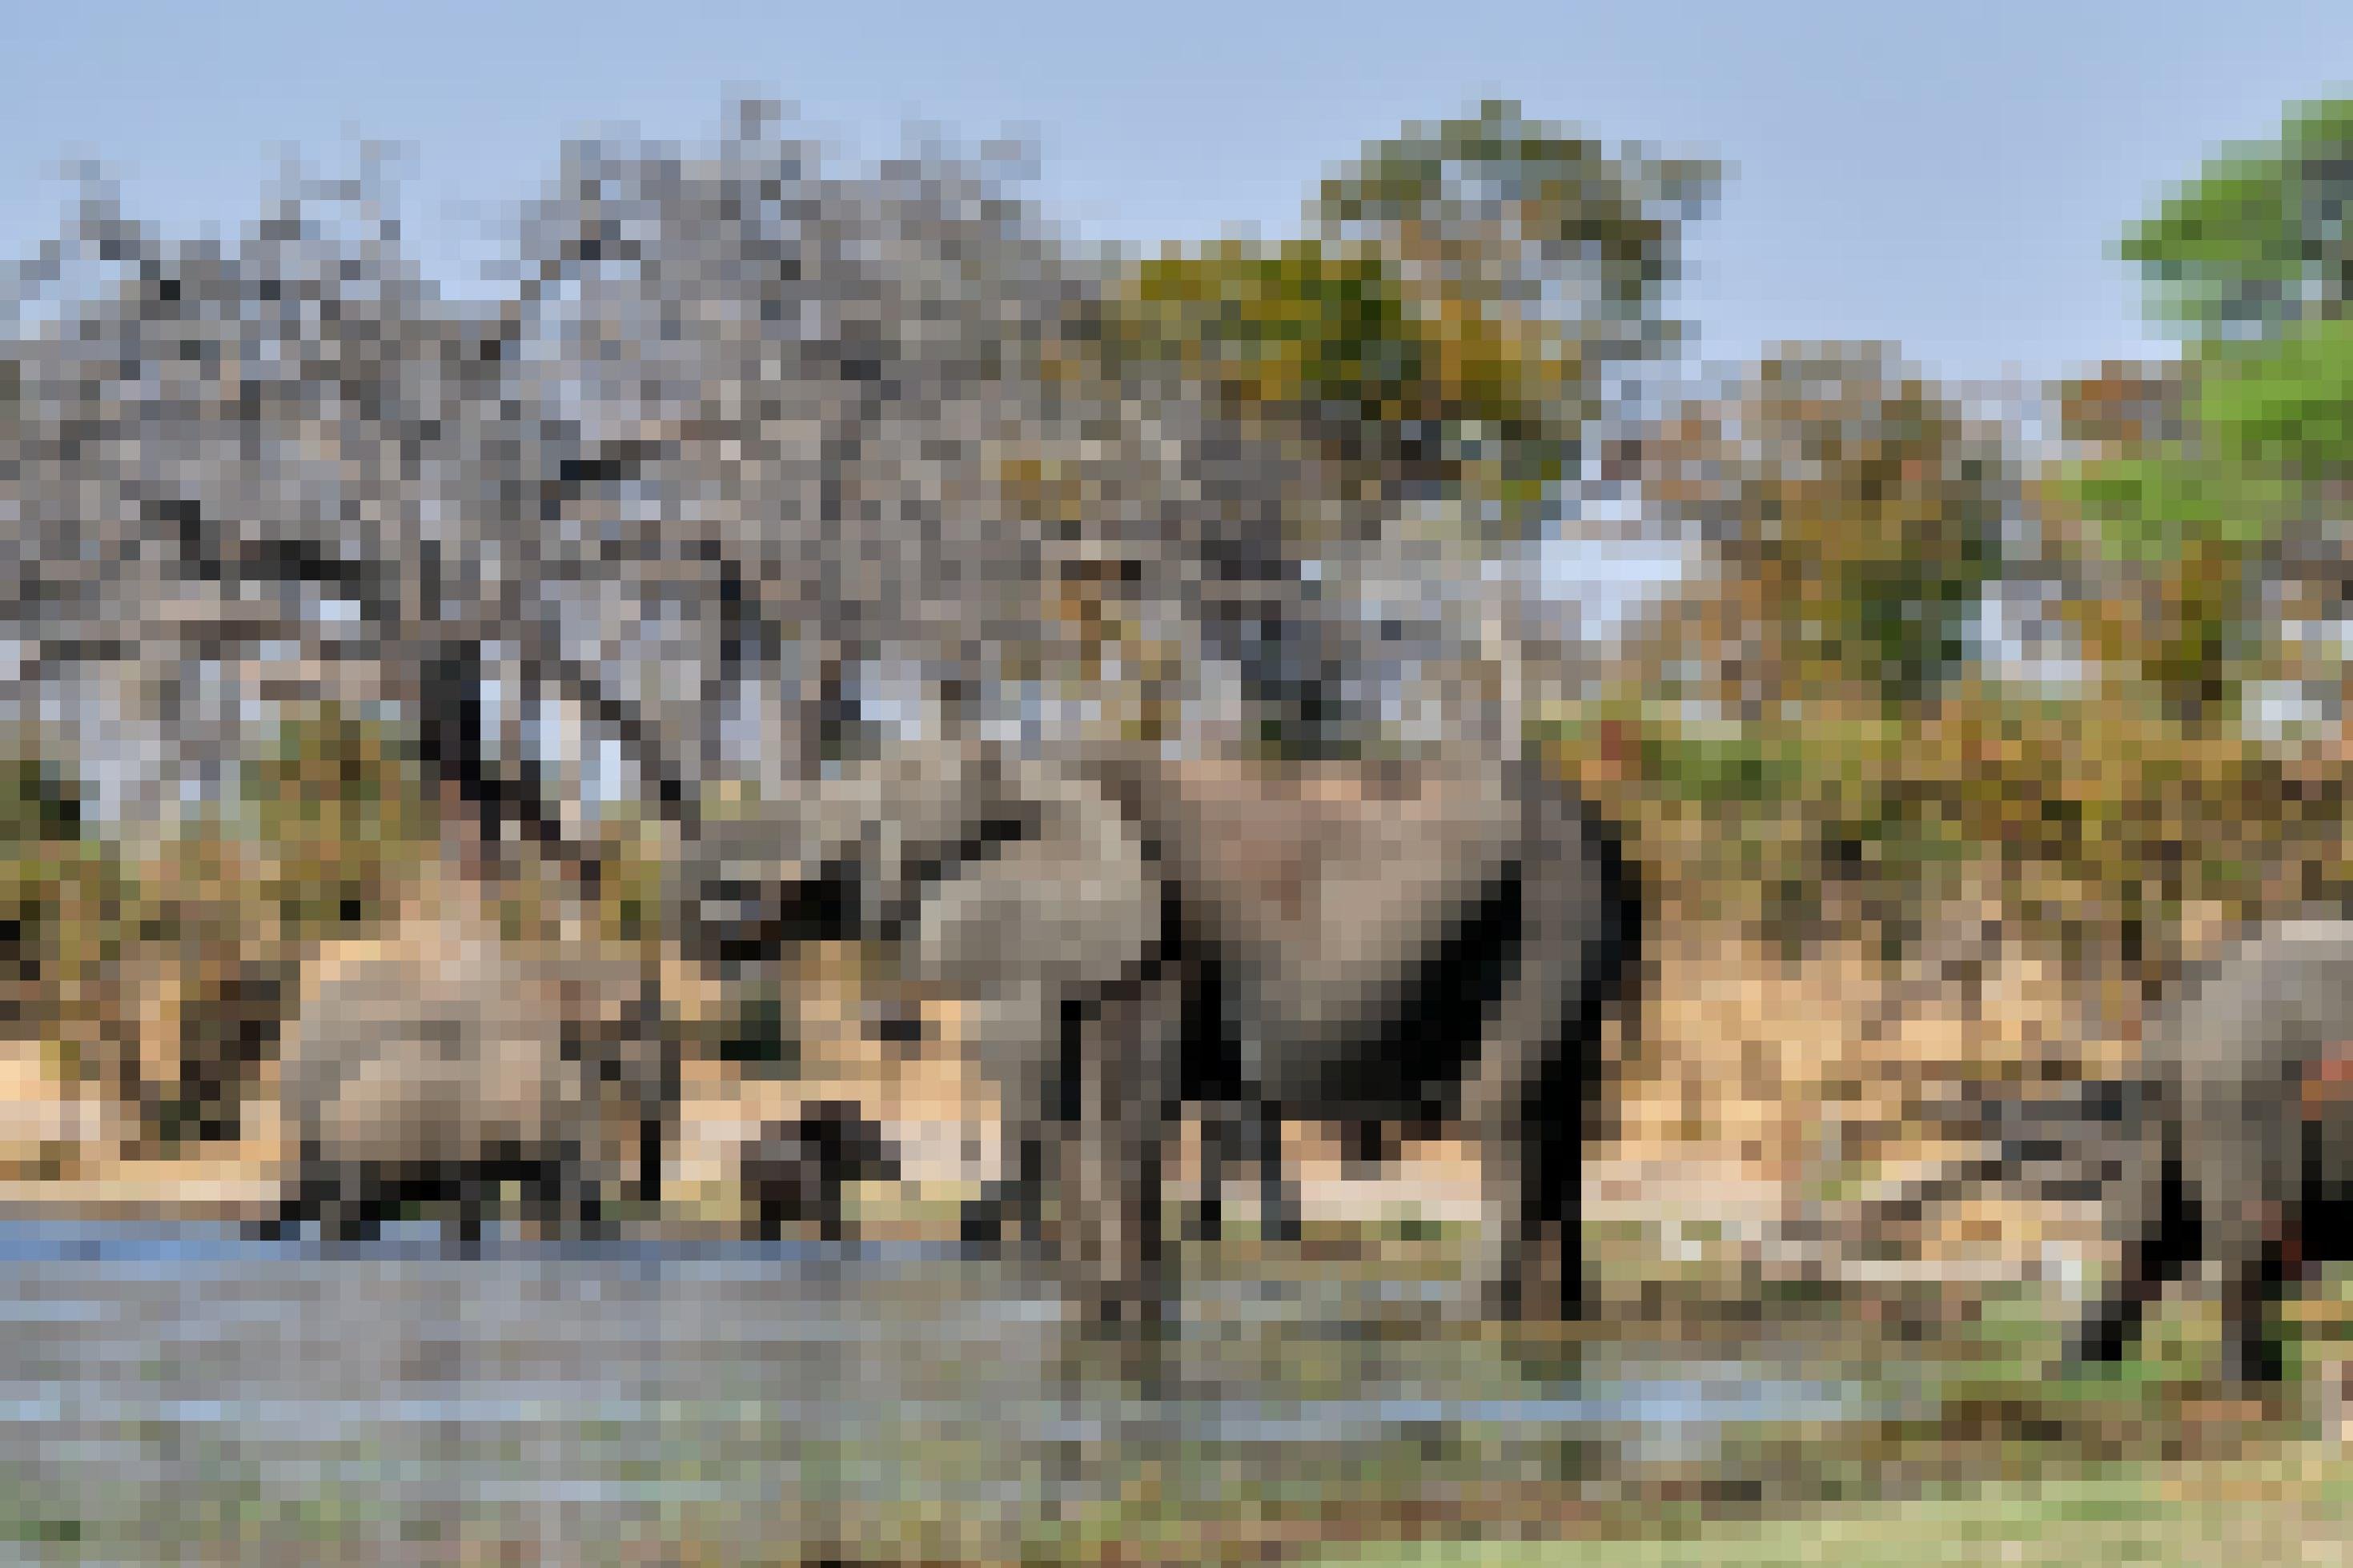 Ein paar Elefanten, darunter ein Junges, waten durch das Wasser. Im Vordergrund steht ein trinkender Elefant. Am Ufer der Wasserstelle wachsen Bäume.